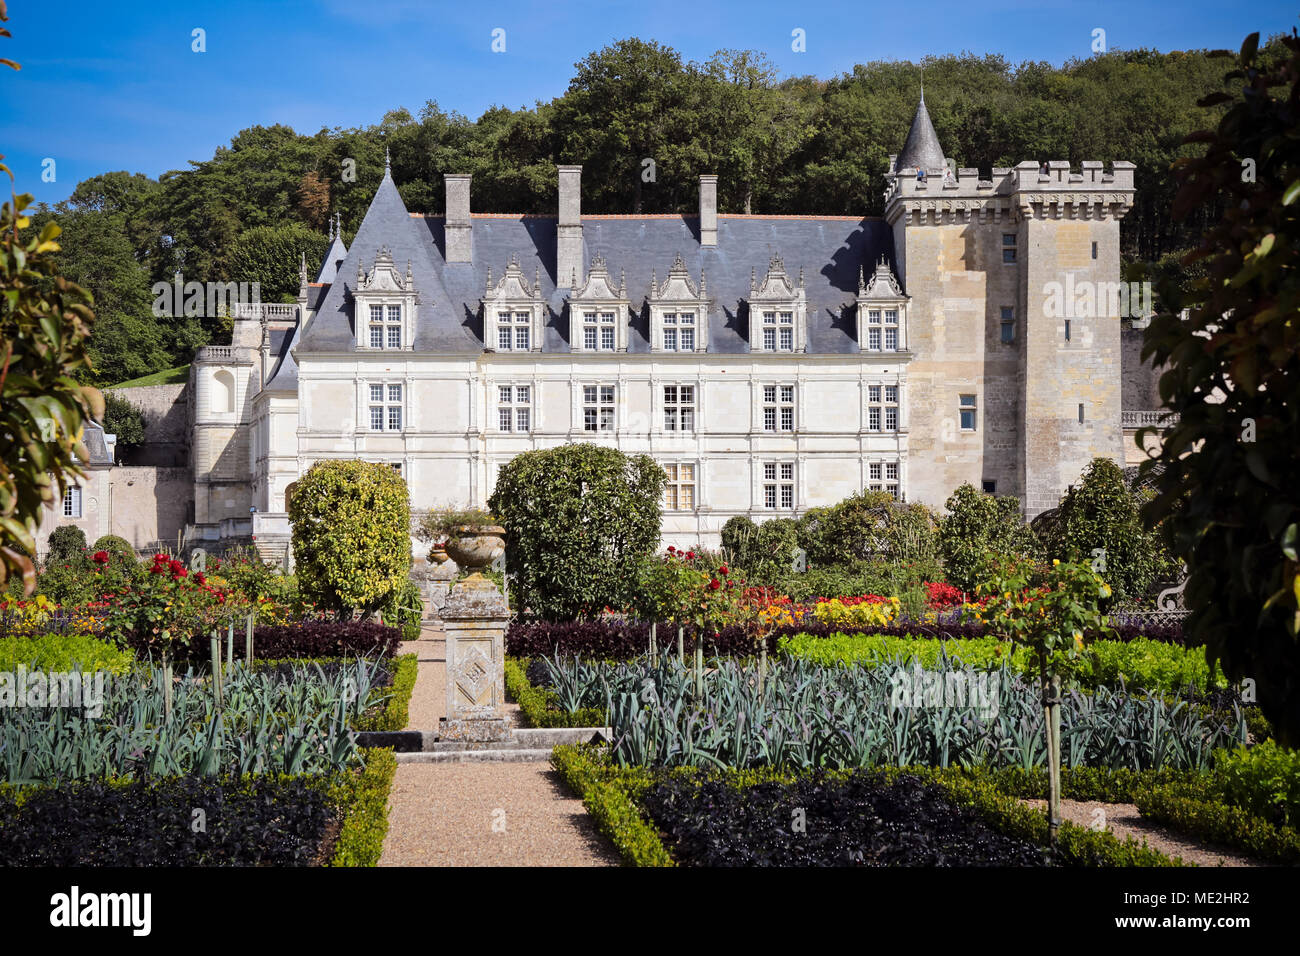 Villandry Castle, Château de Villandry with gardens, Indre-et-Loire, Touraine, Loire Valley, France Stock Photo